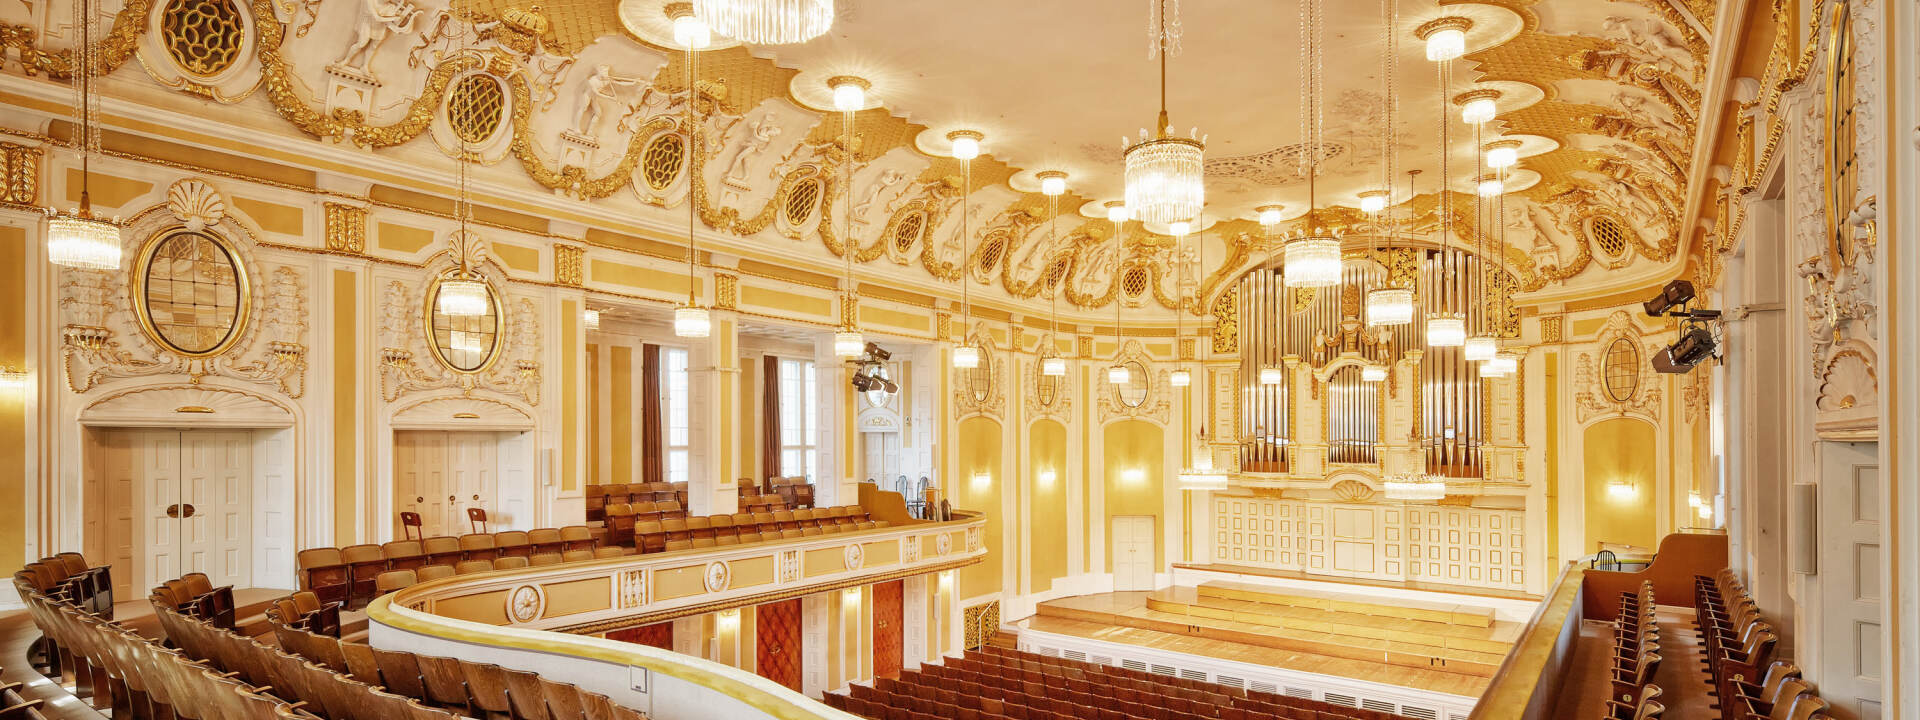 Mozarteum Foundation - Great Hall © ISMChristian Schneider